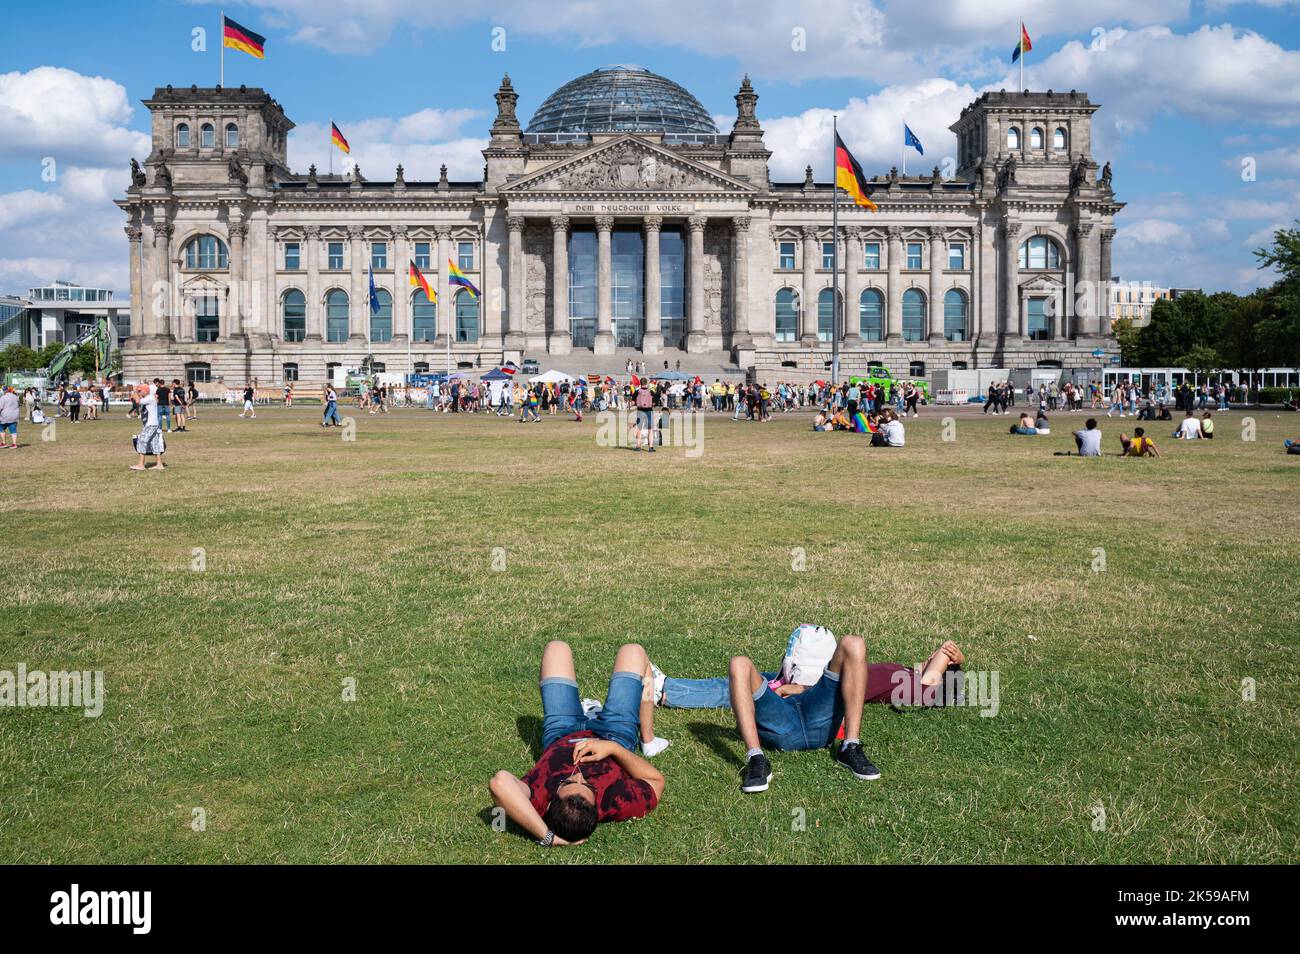 23.07.2022, Germania, Berlino - la gente si trova sul prato di fronte al Reichstag, la Piazza della Repubblica nel quartiere Mitte, godendo di una giornata estiva di sole Foto Stock